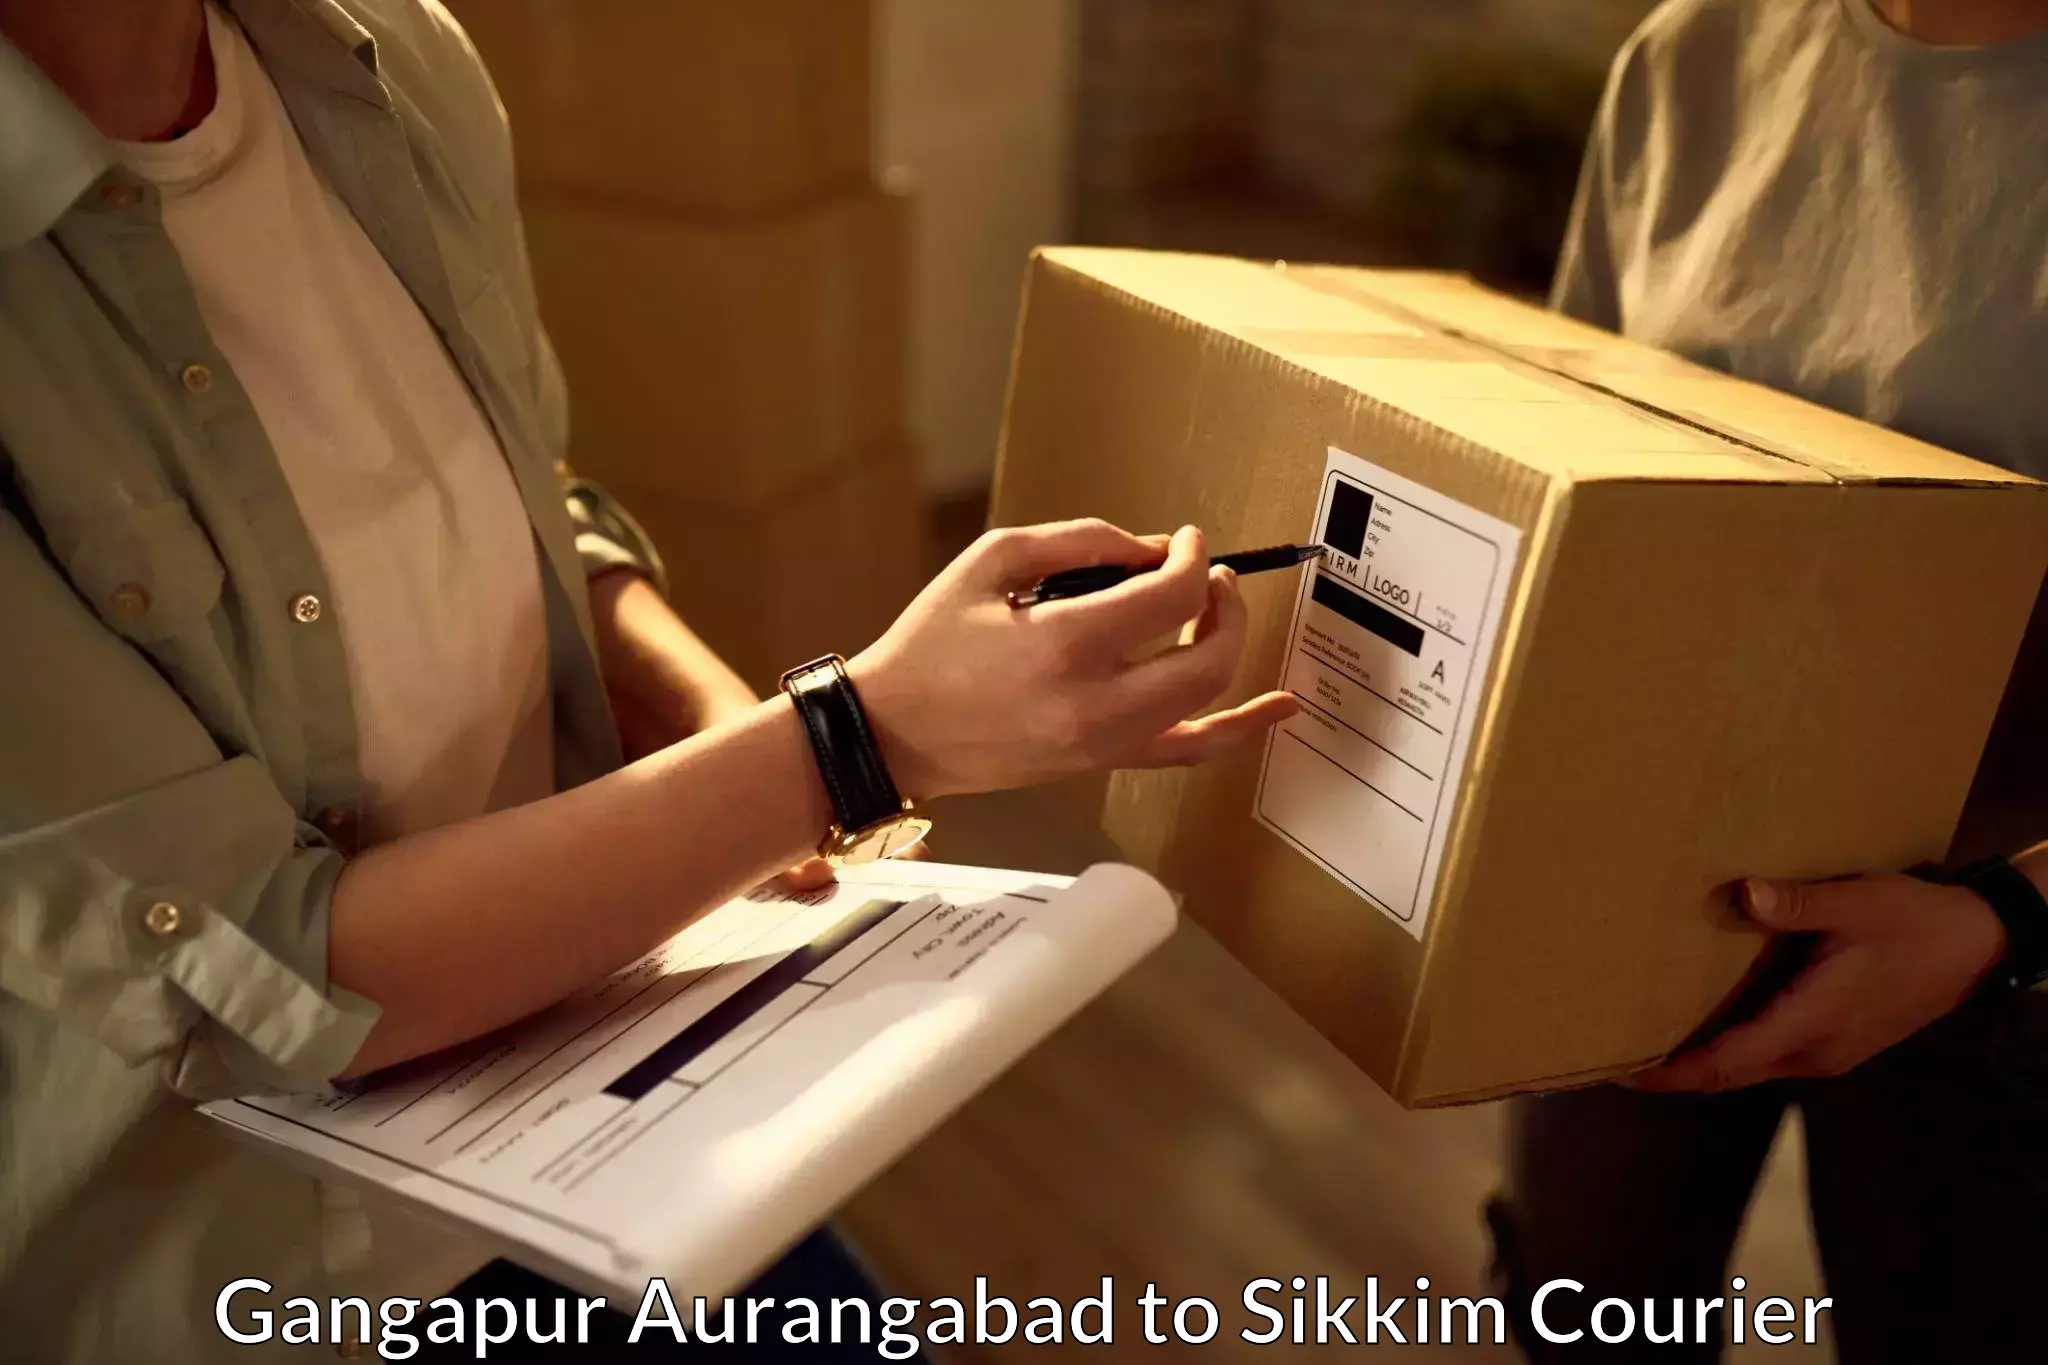 Premium courier services Gangapur Aurangabad to Geyzing